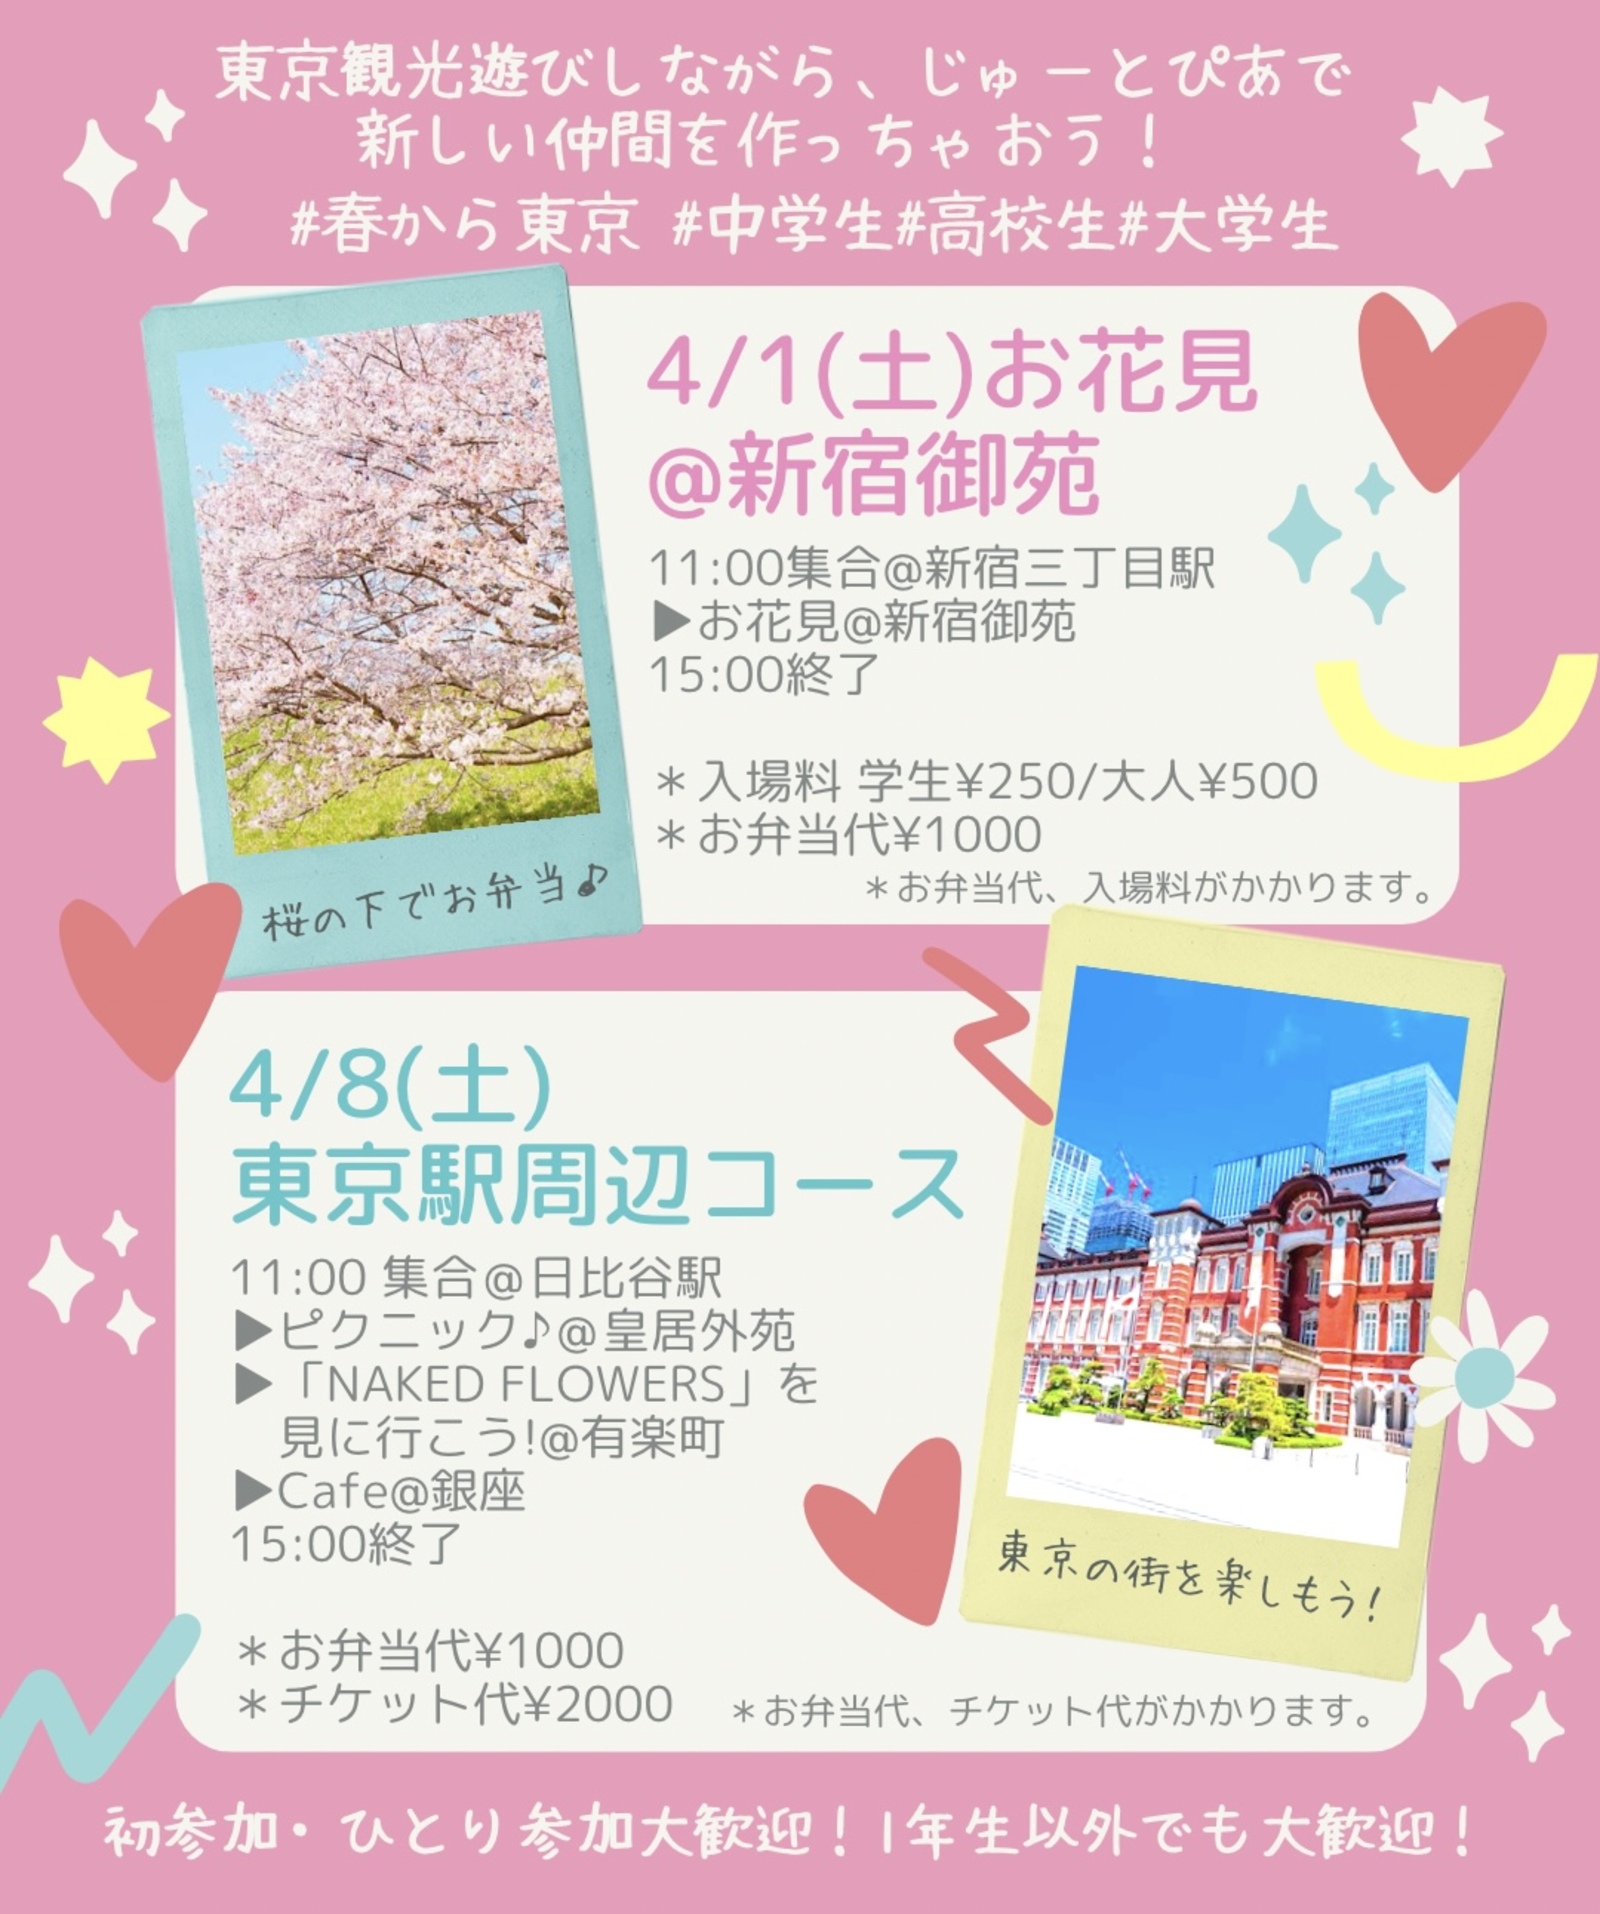 【10代or学生女子限定】4/8(土) ピクニック@皇居& 「NAKED FLOWERS」